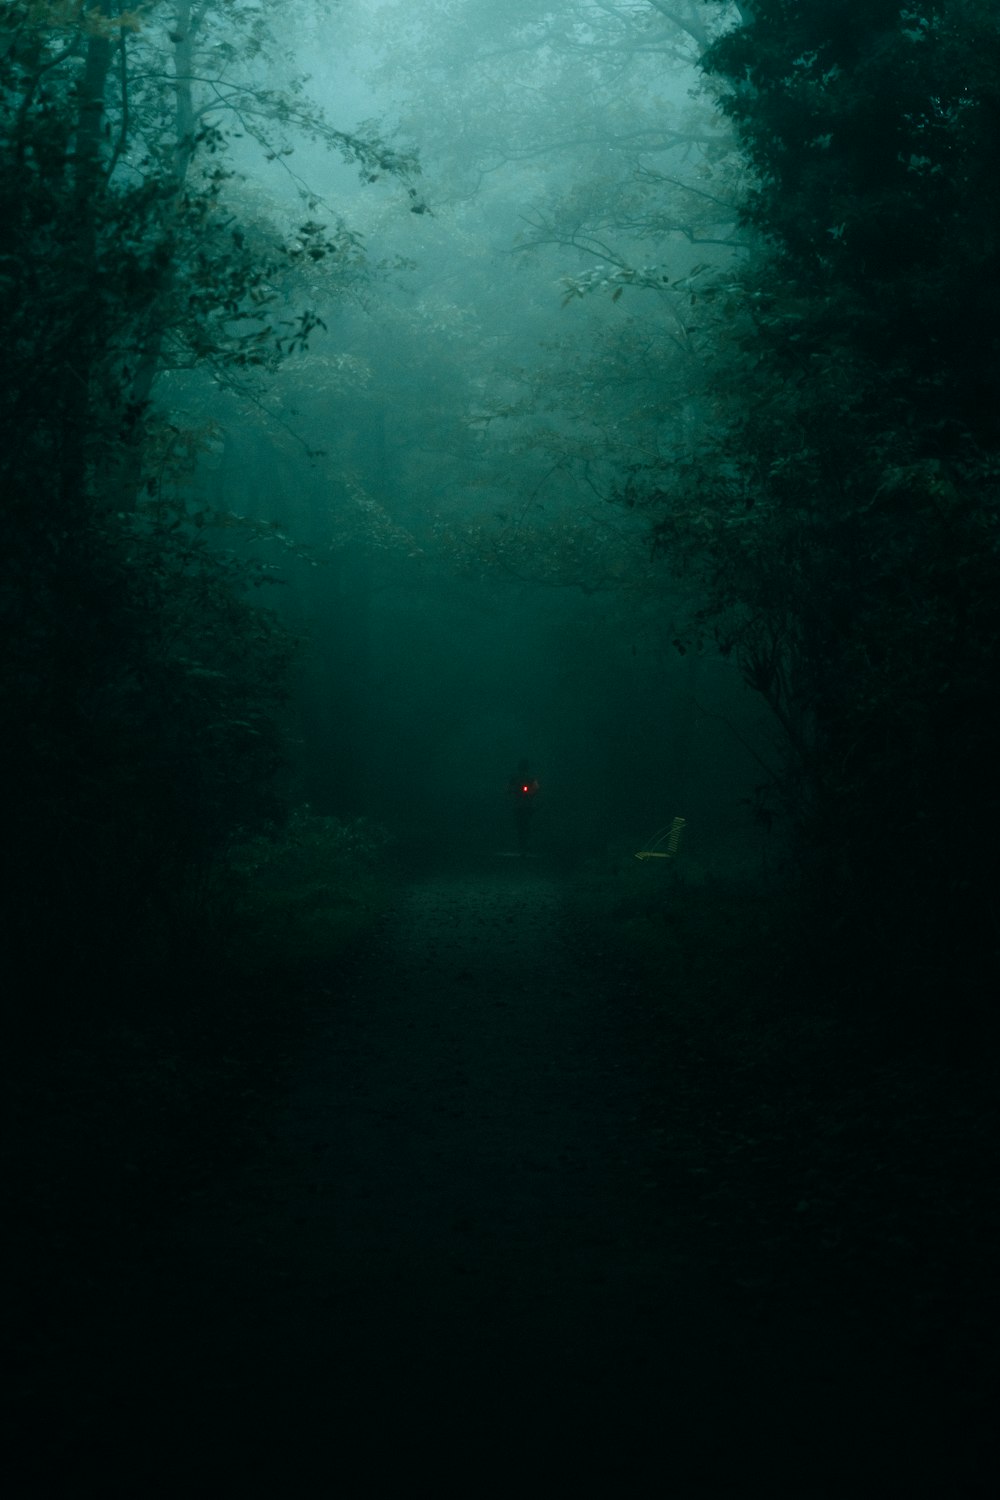 una persona in piedi nel mezzo di una foresta oscura